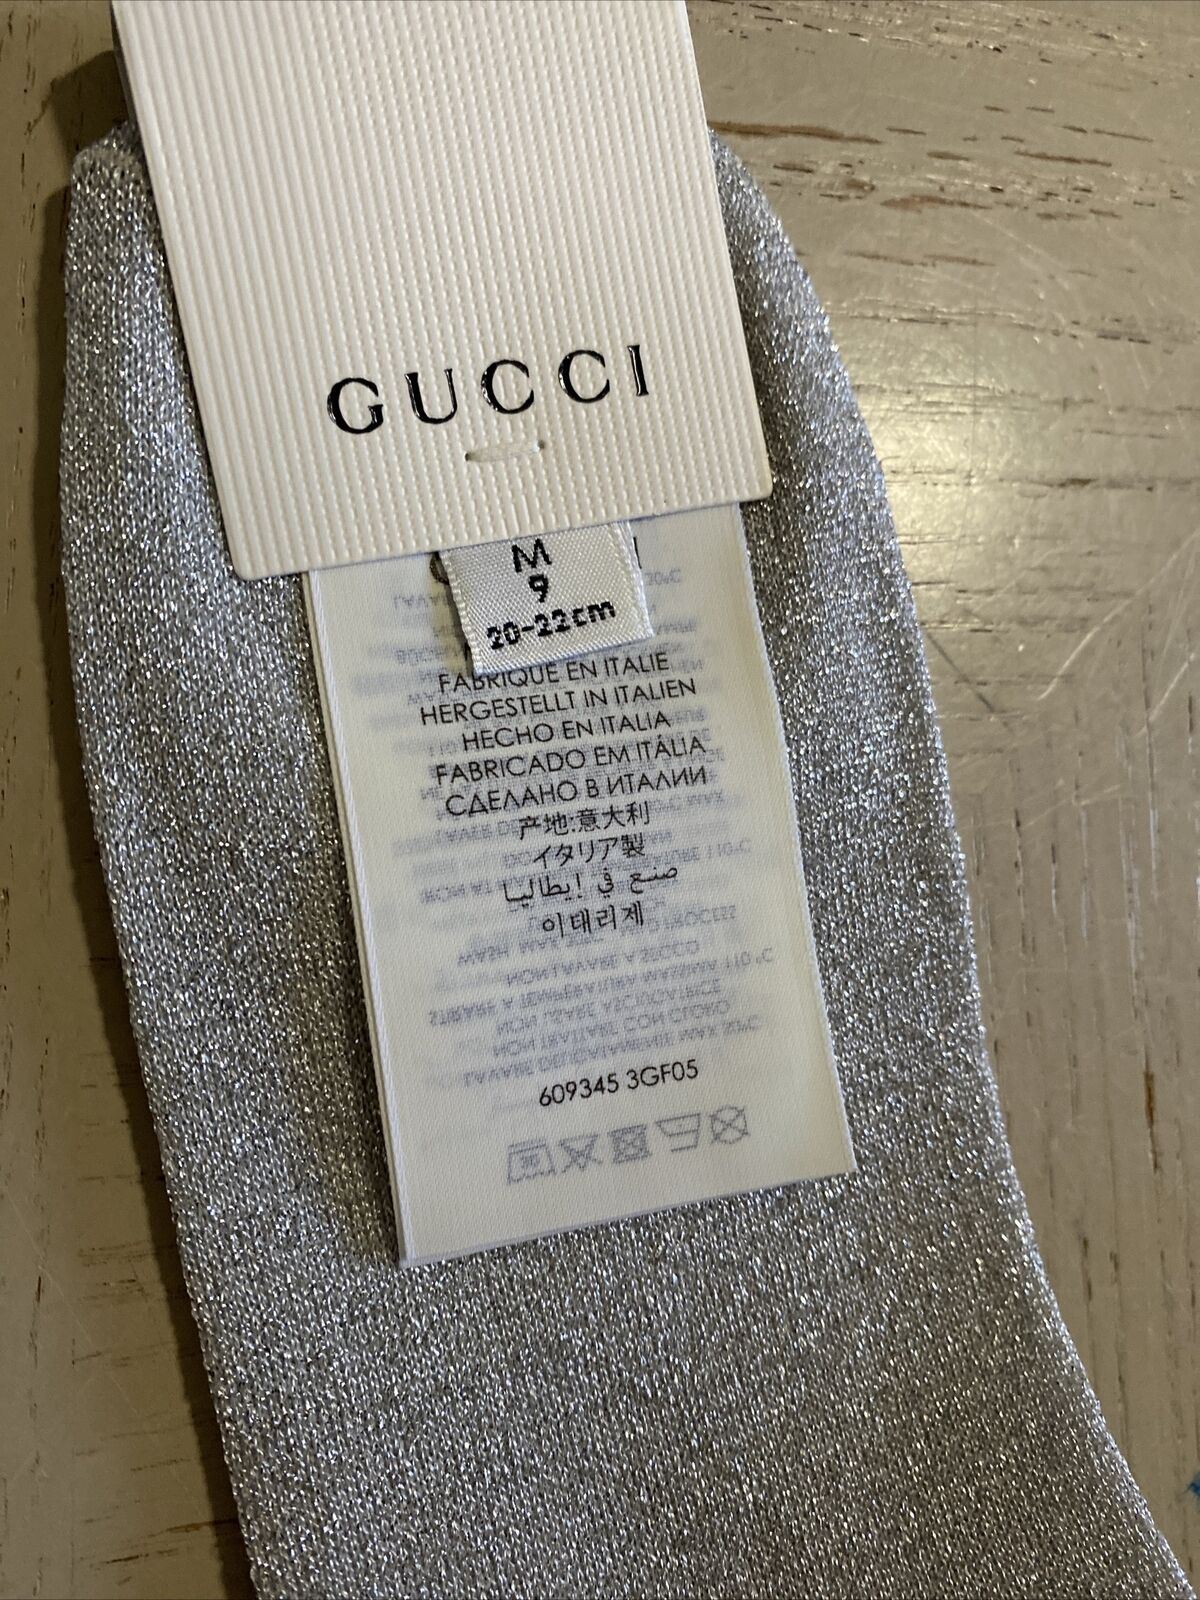 Мини-носки NWT Gucci в греческом стиле с монограммой Gucci, серебро/золото, размер M, Италия